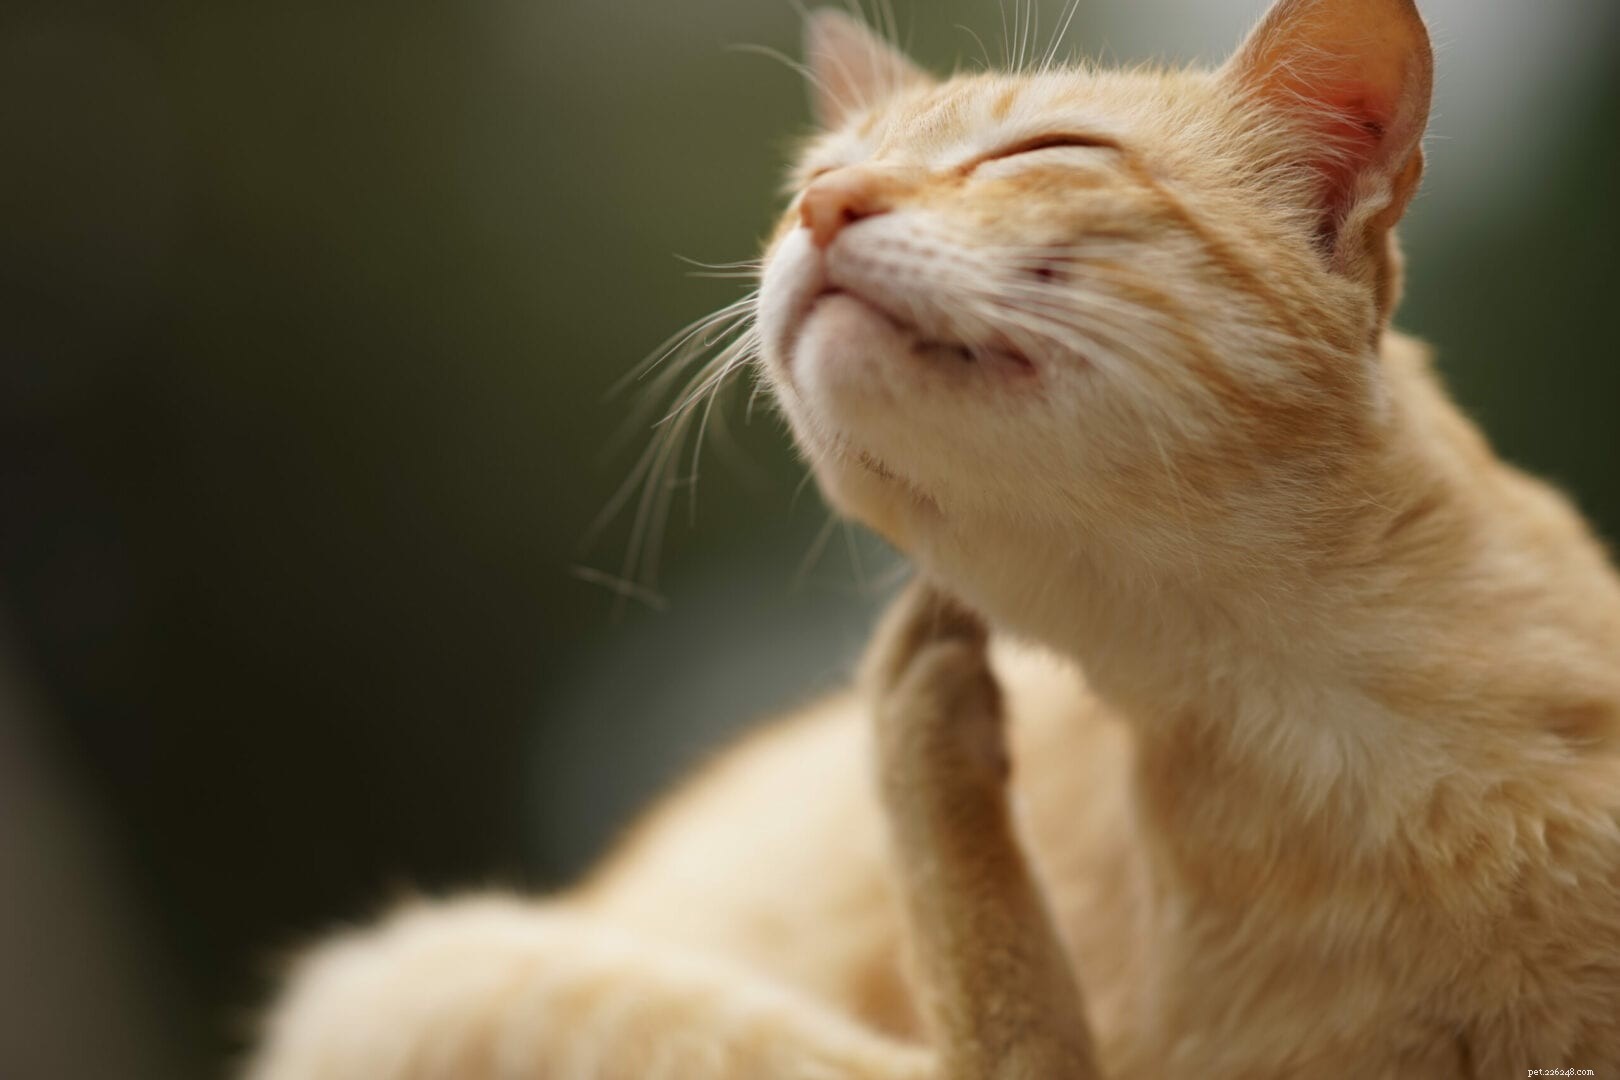 Как узнать, есть ли у вашей кошки пищевая аллергия